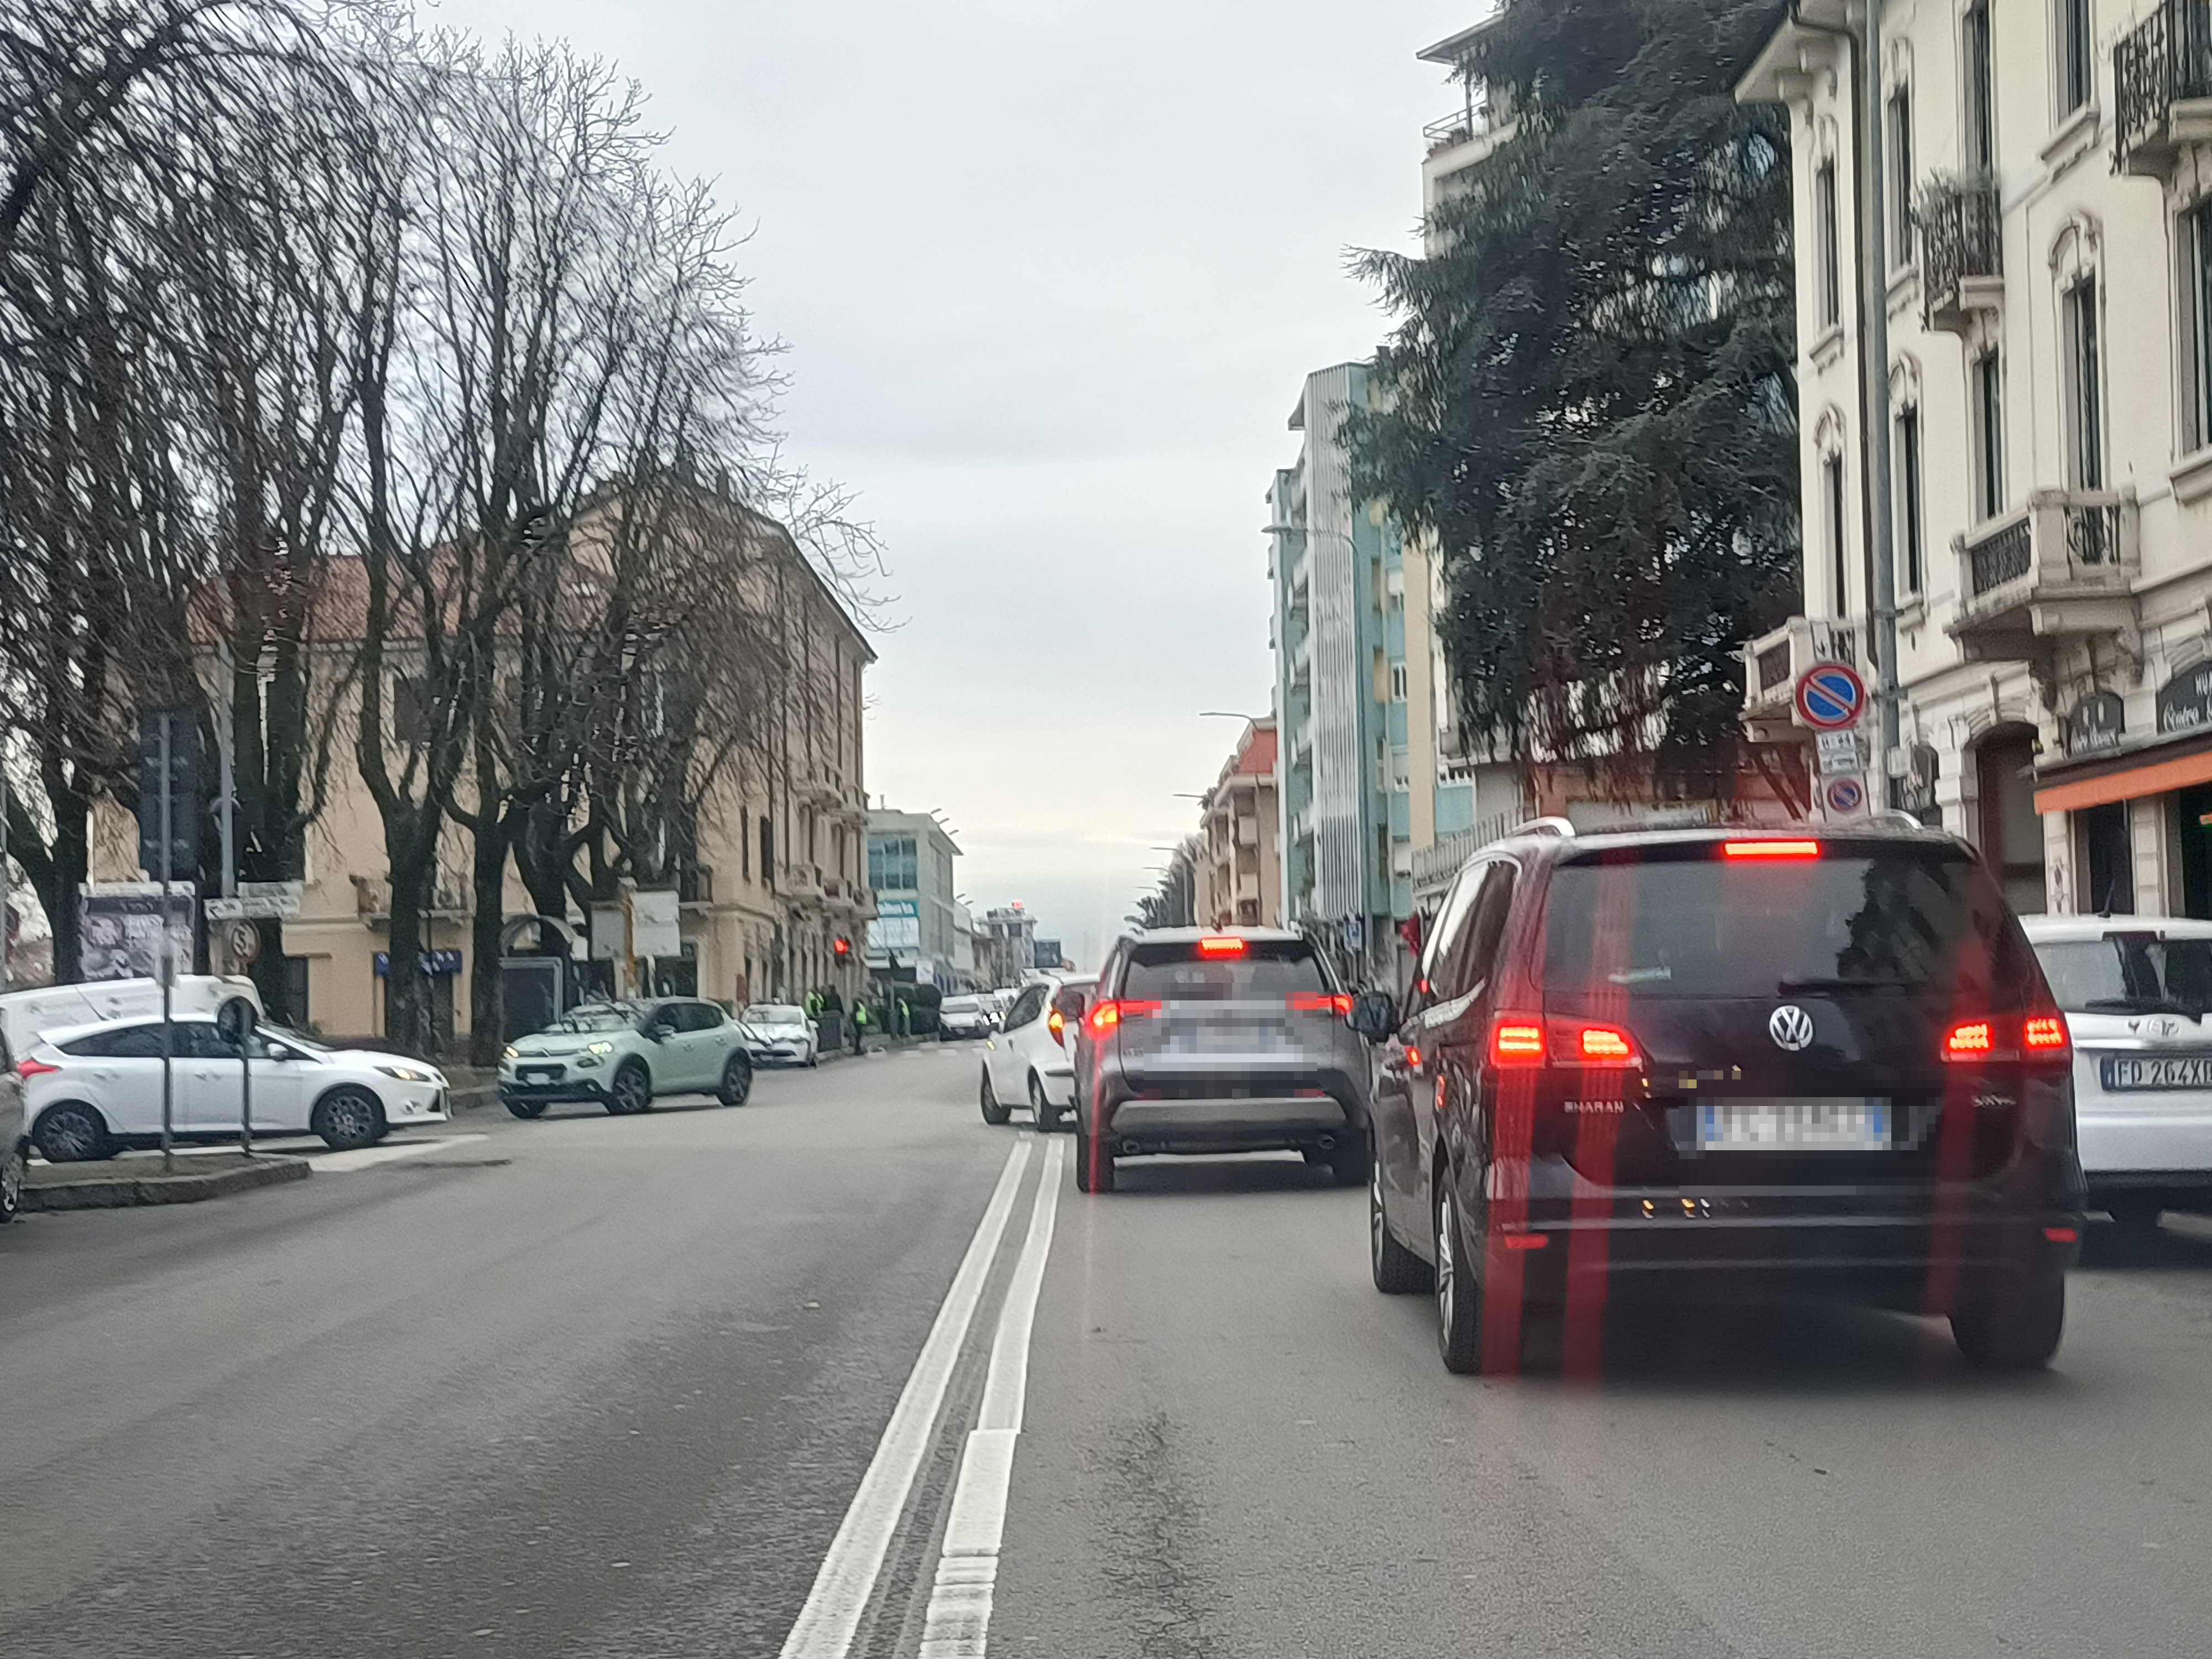 Monza traffico via via Borgazzi all'incrocio con il sottopasso verso San Rocco